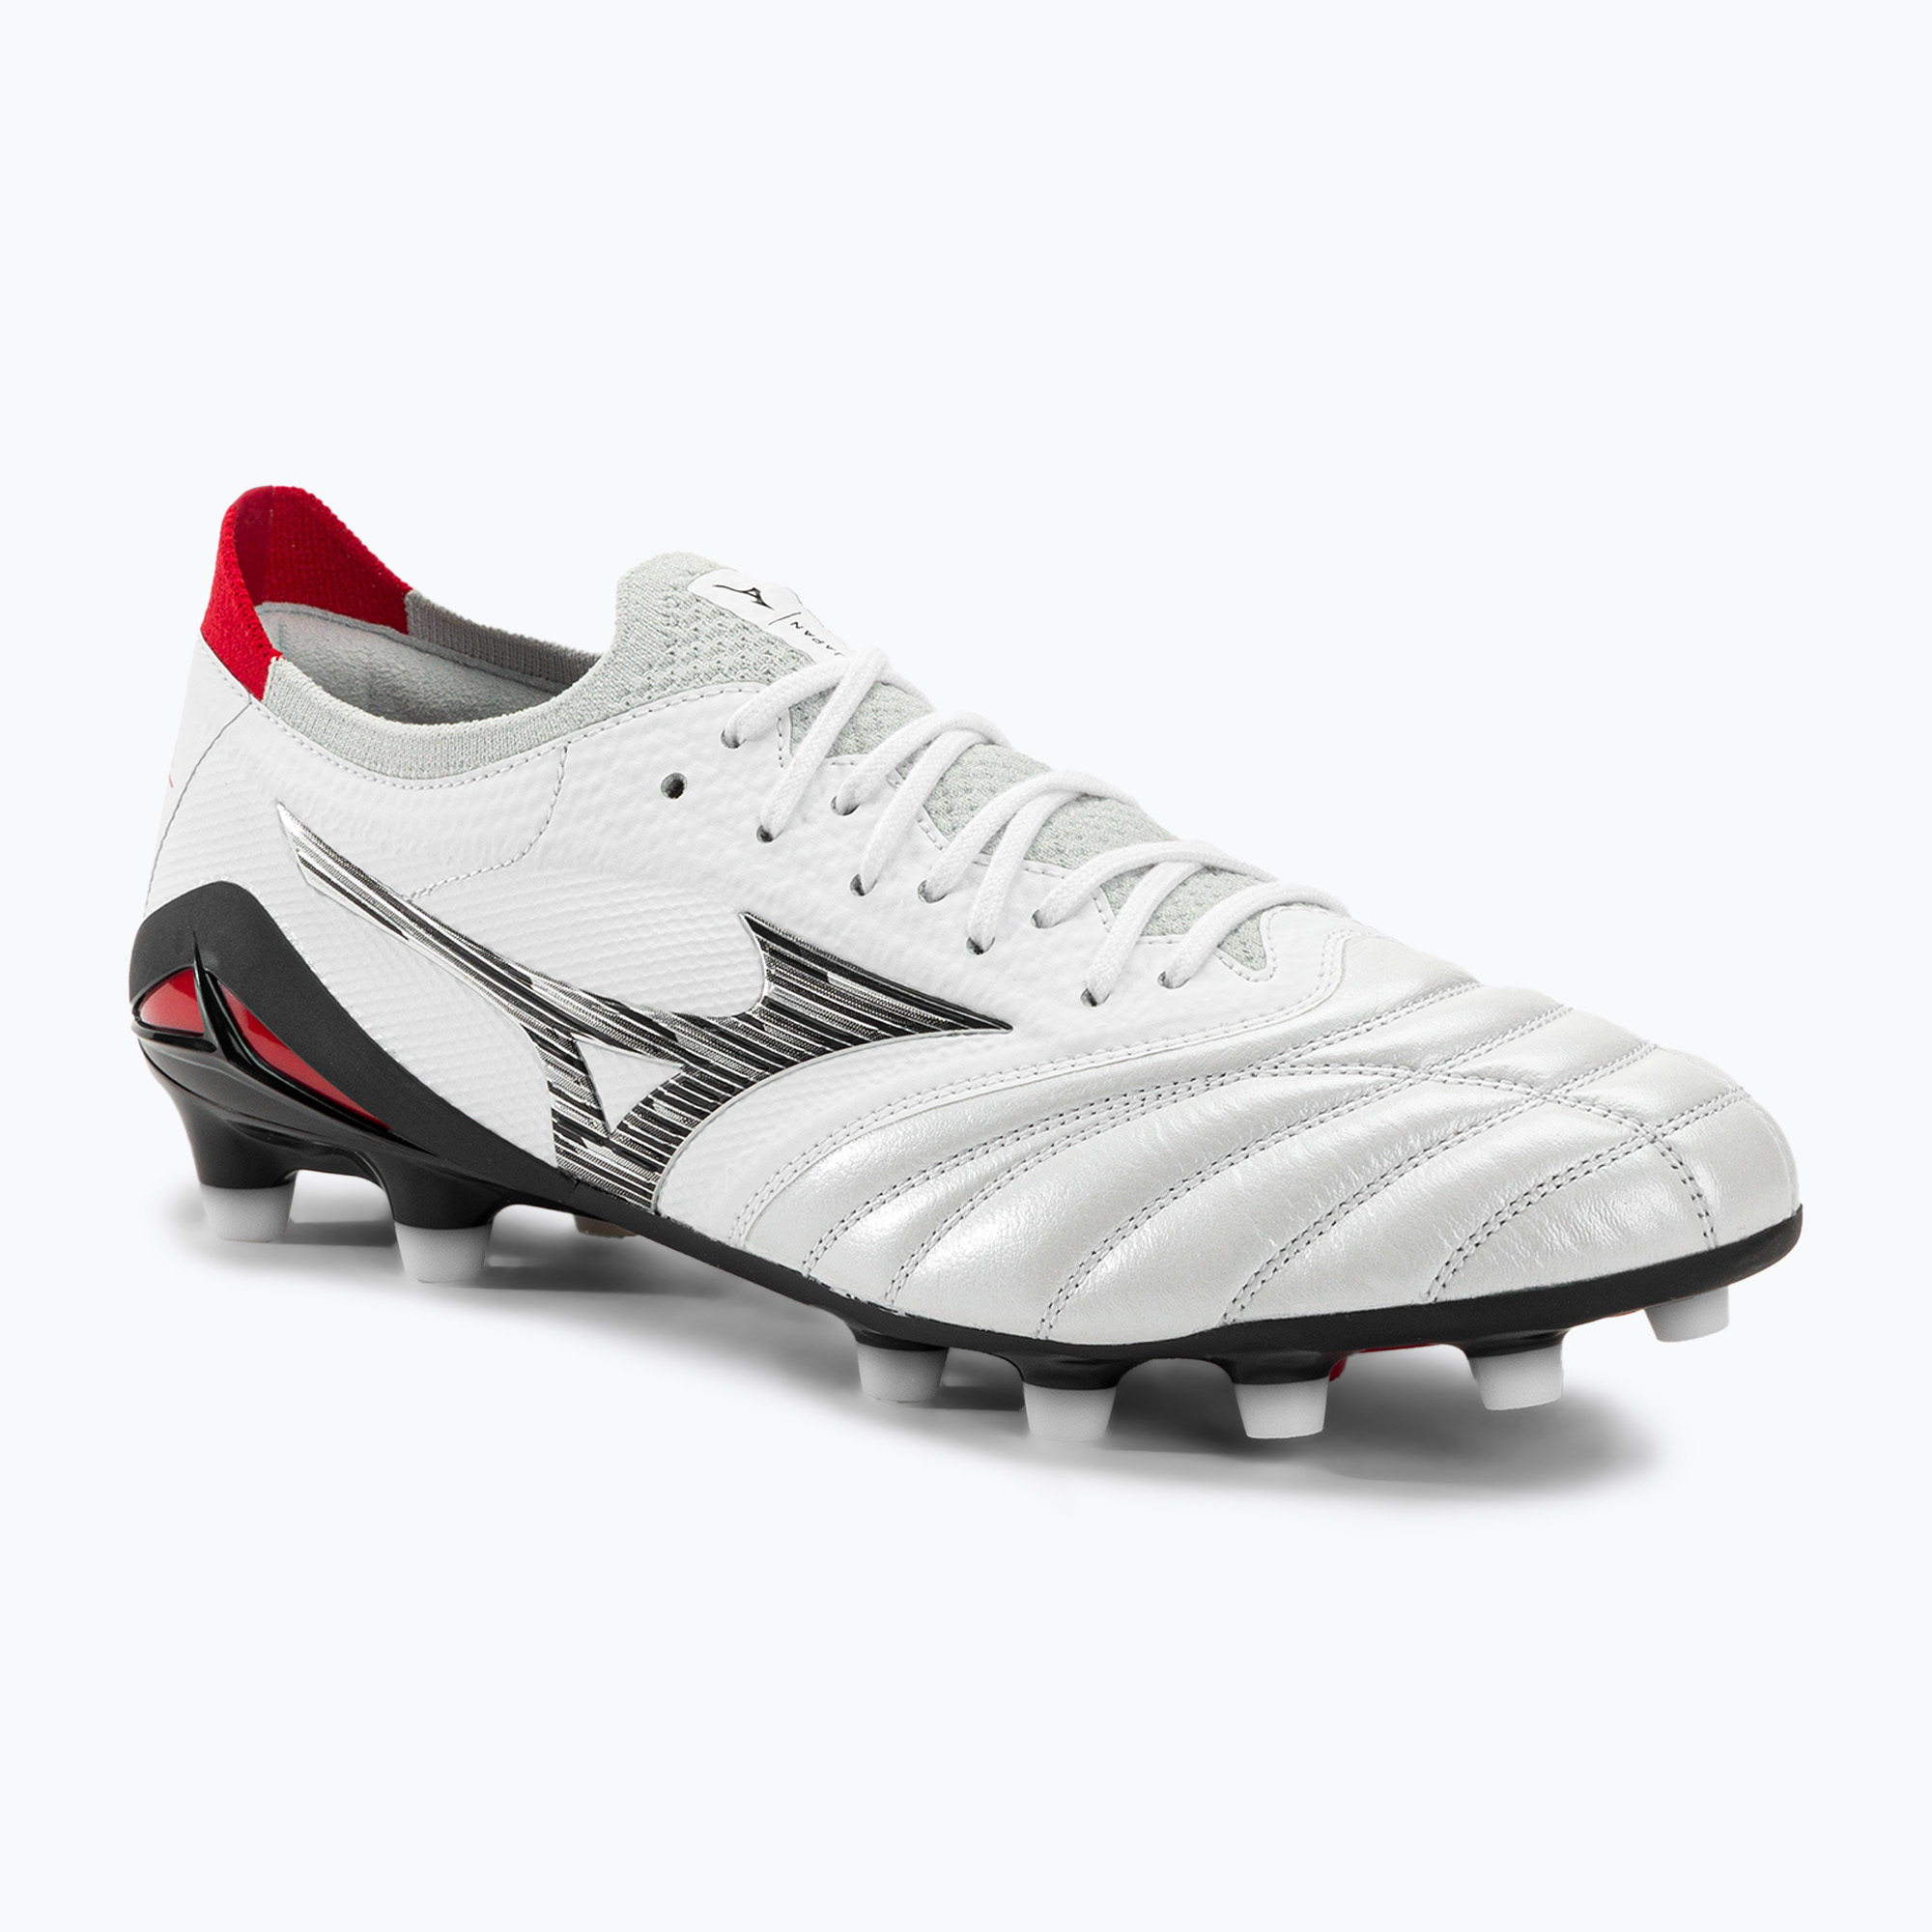 Mizuno Morelia Neo IV Beta JP MD мъжки футболни обувки бяло/черно/китайско червено